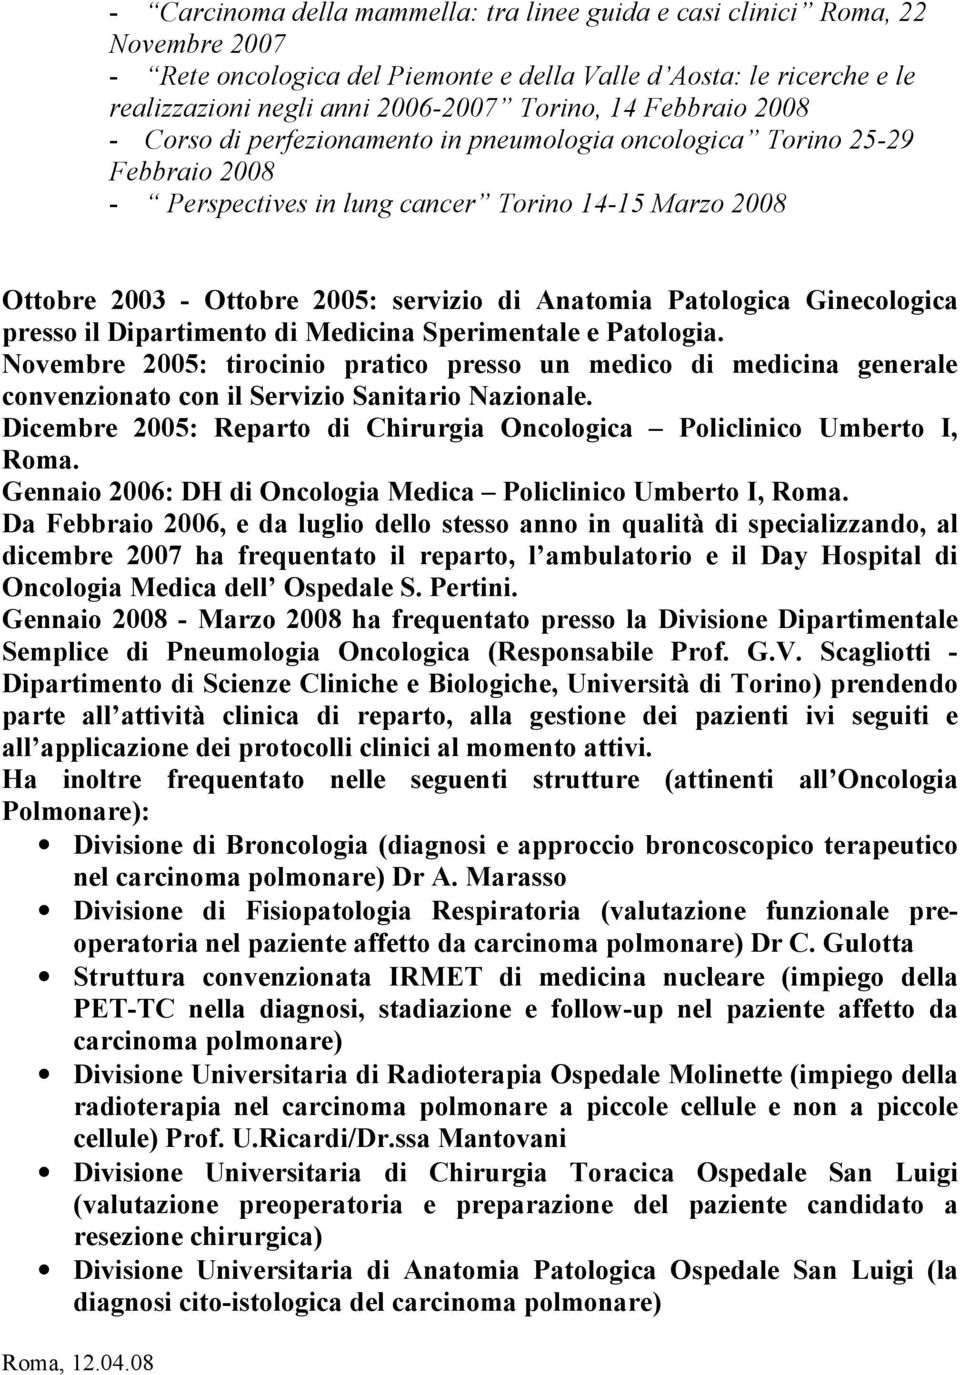 Patologica Ginecologica presso il Dipartimento di Medicina Sperimentale e Patologia.